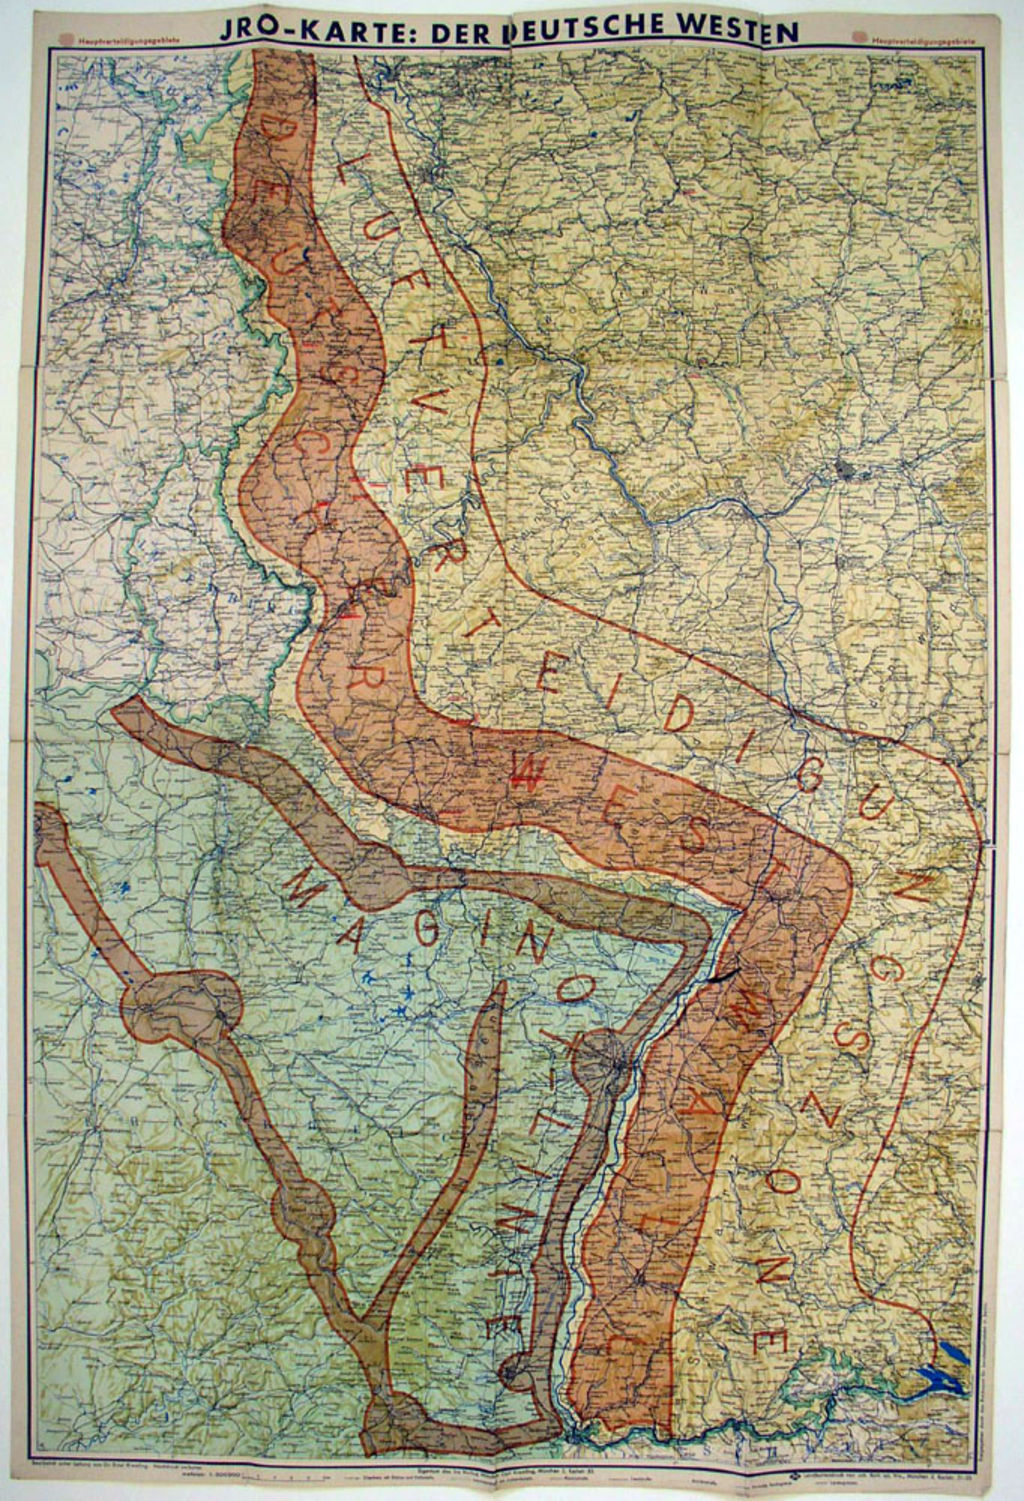 Landkarte: Militär-strategische Karte mit Westwall und Maginot-Linie, 1939/1940